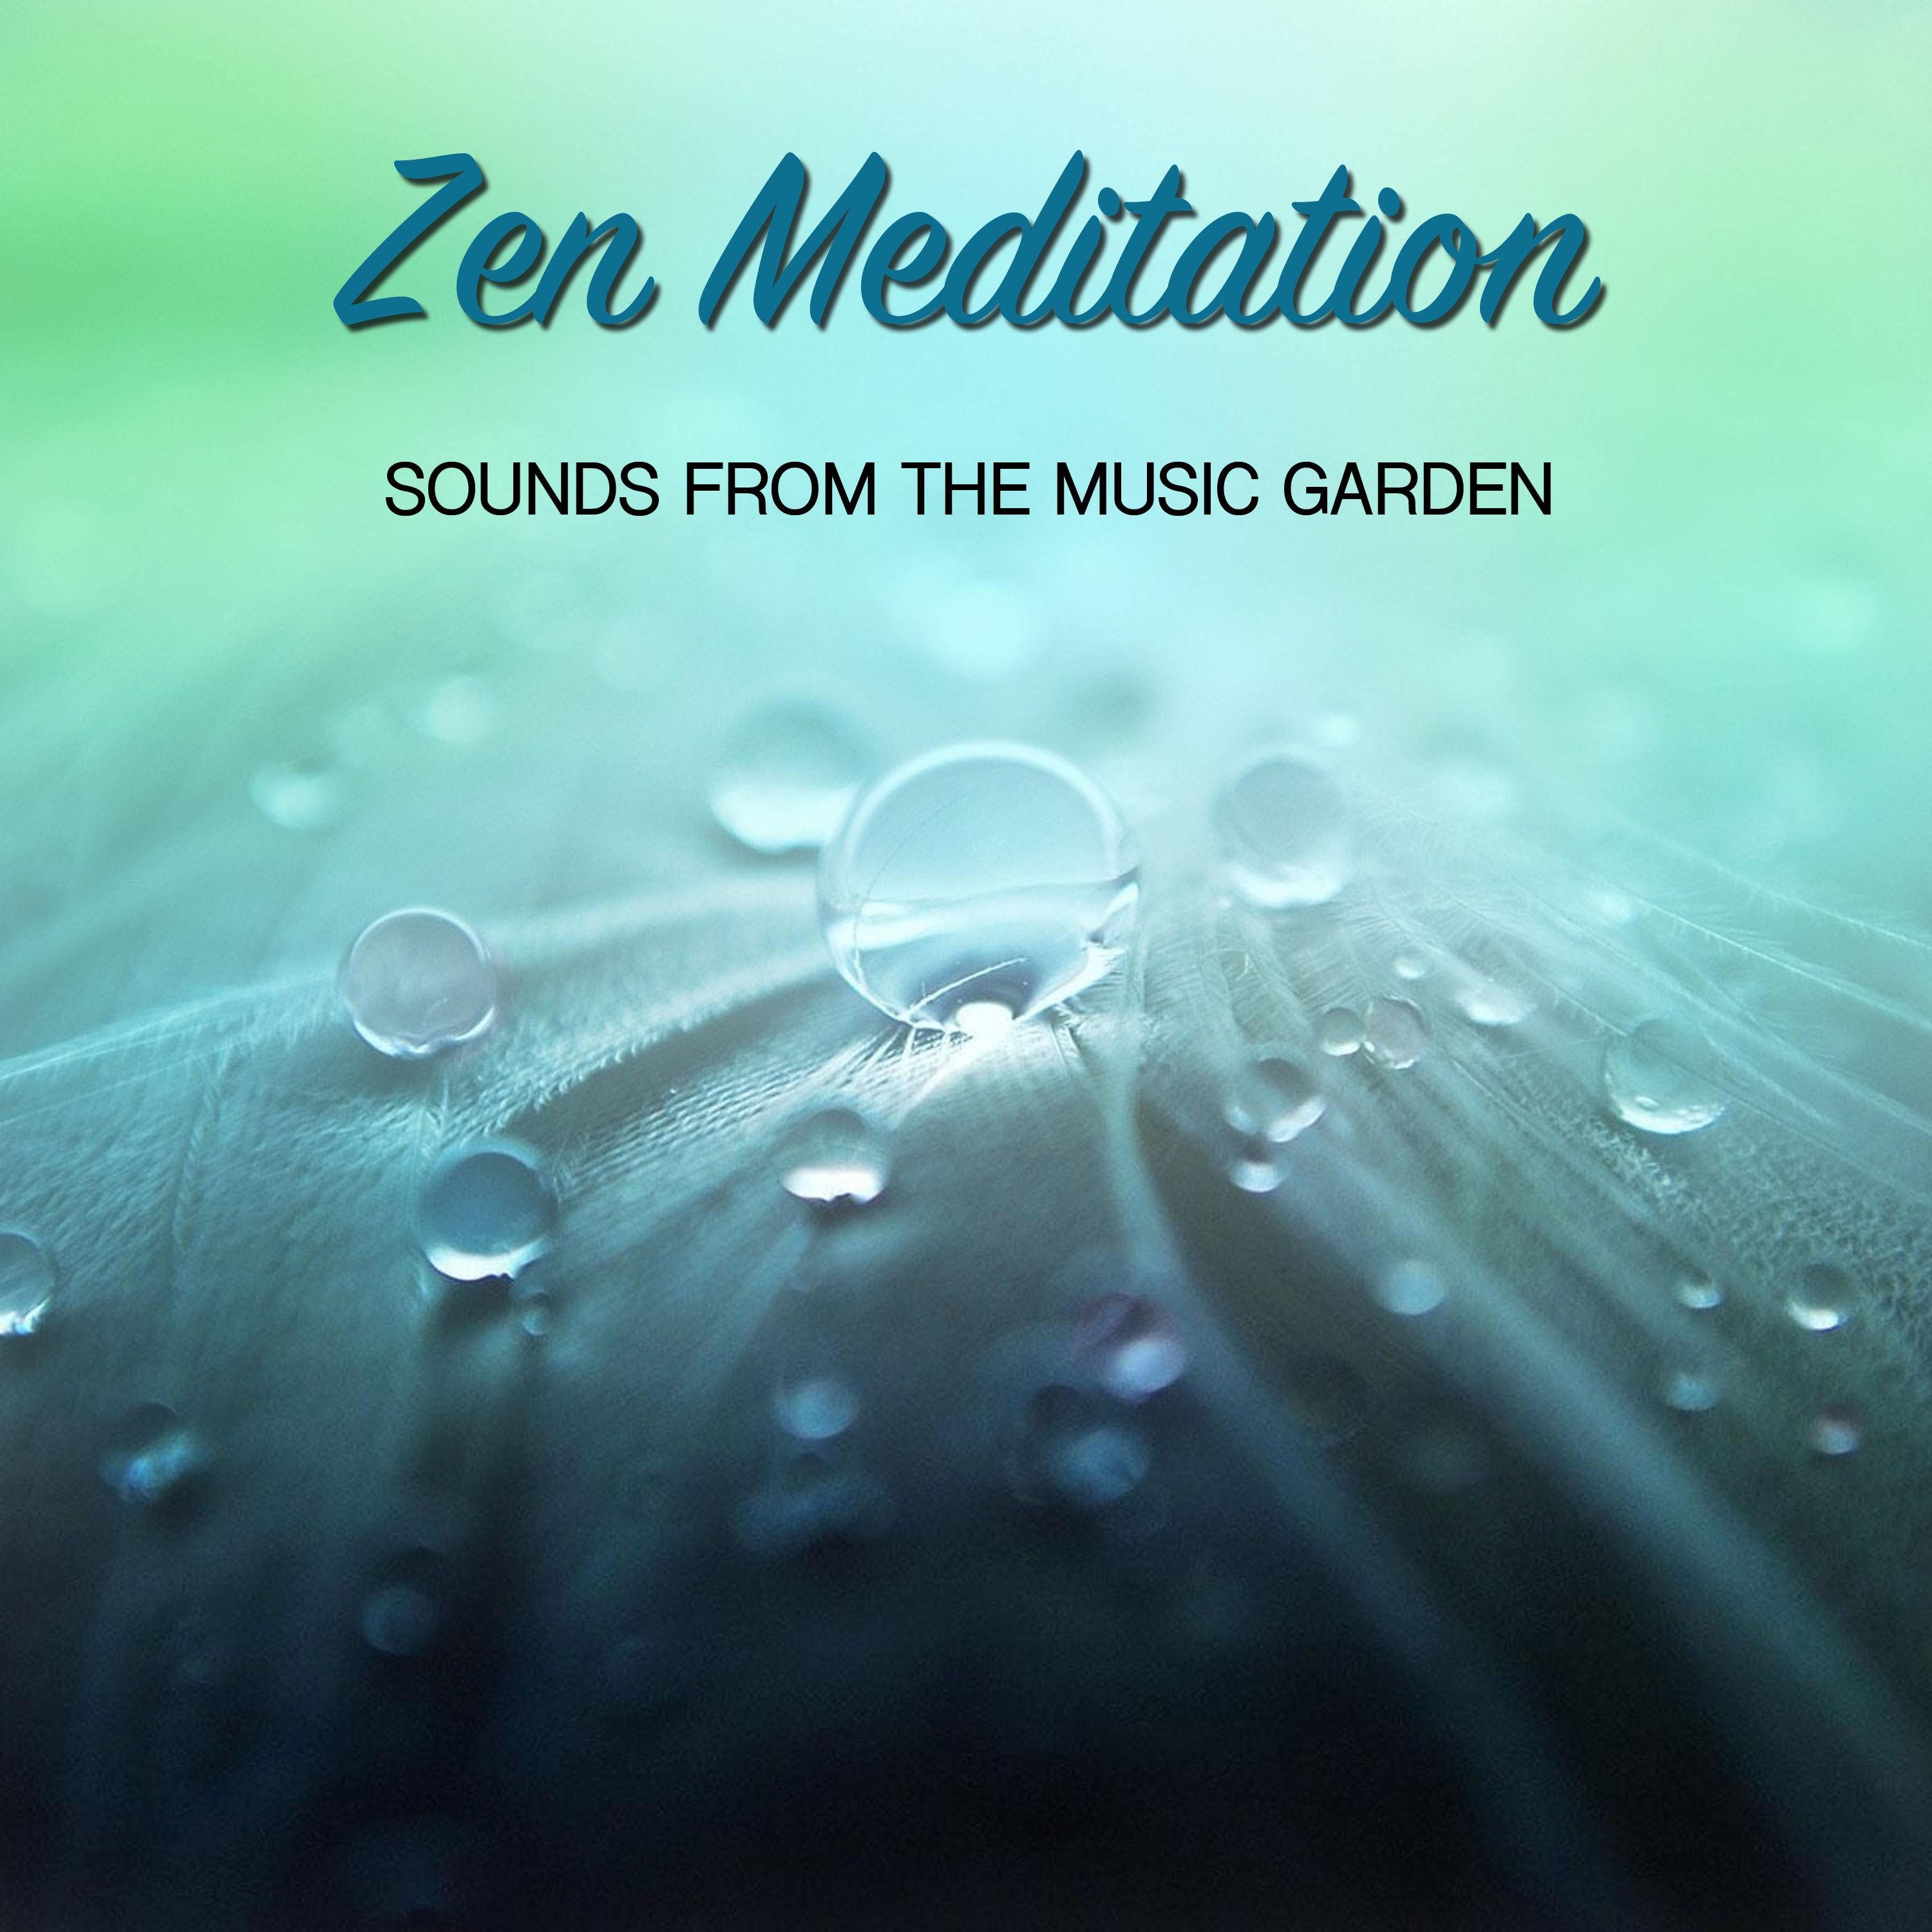 15 Sounds from the Music Garden: Zen Meditation